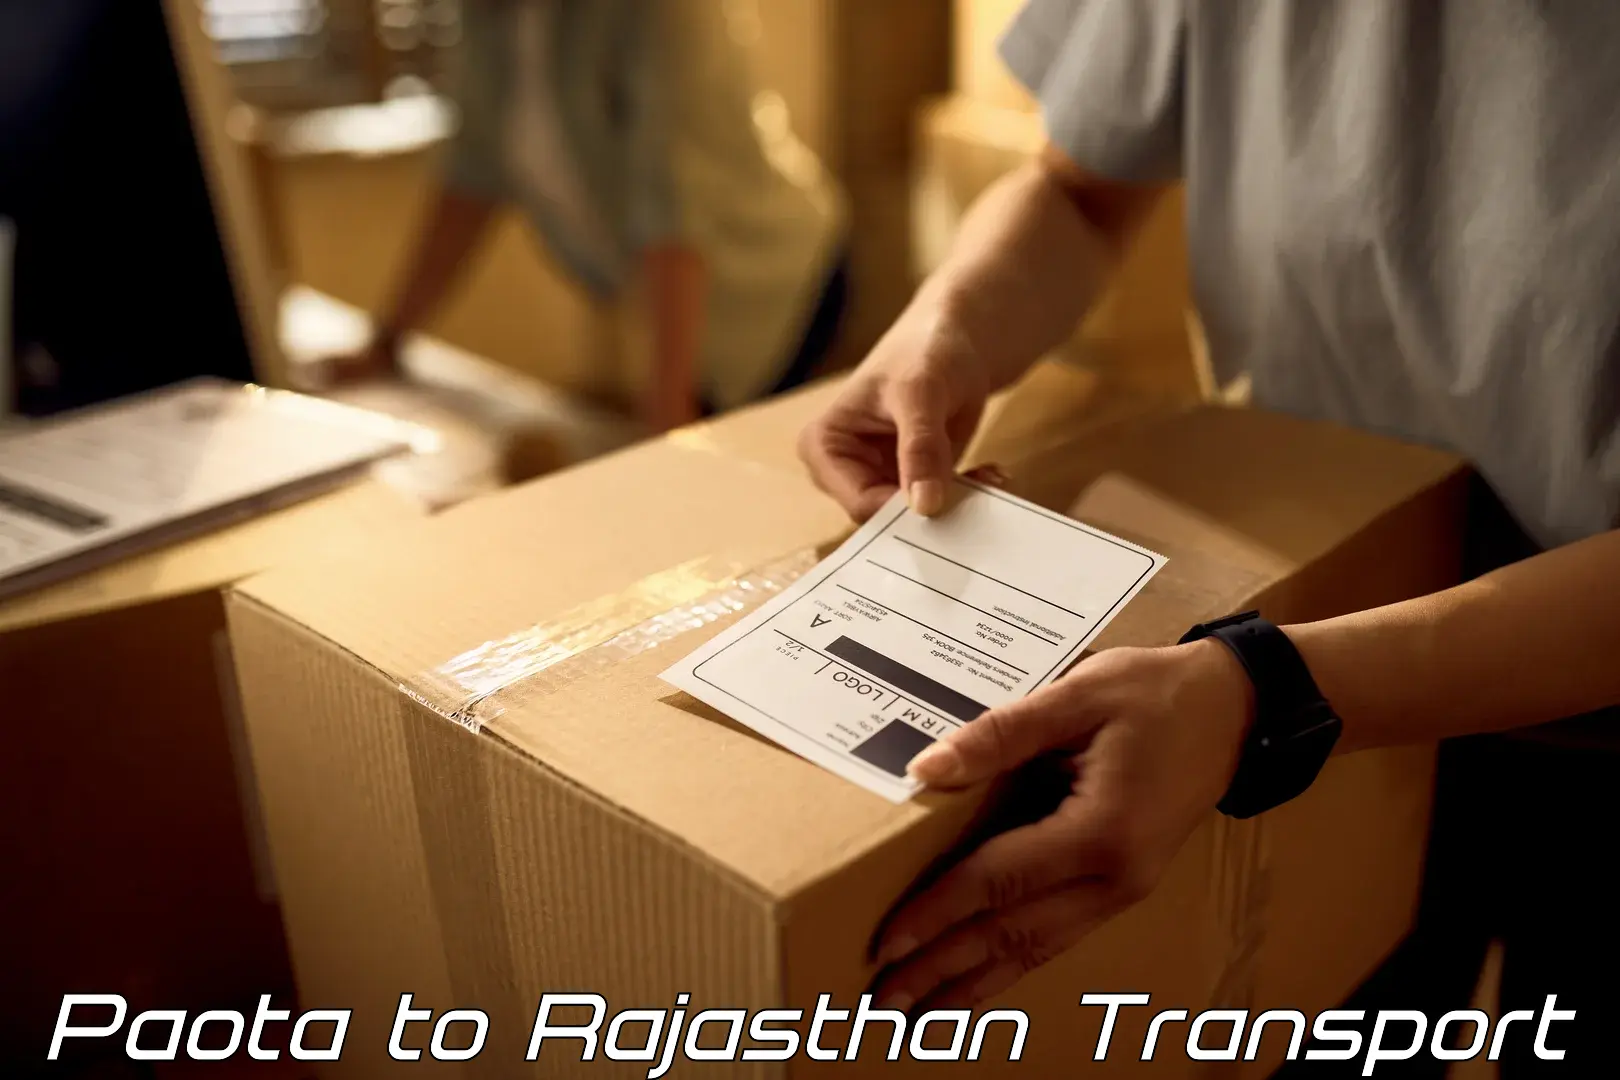 Commercial transport service Paota to Khandela Sikar